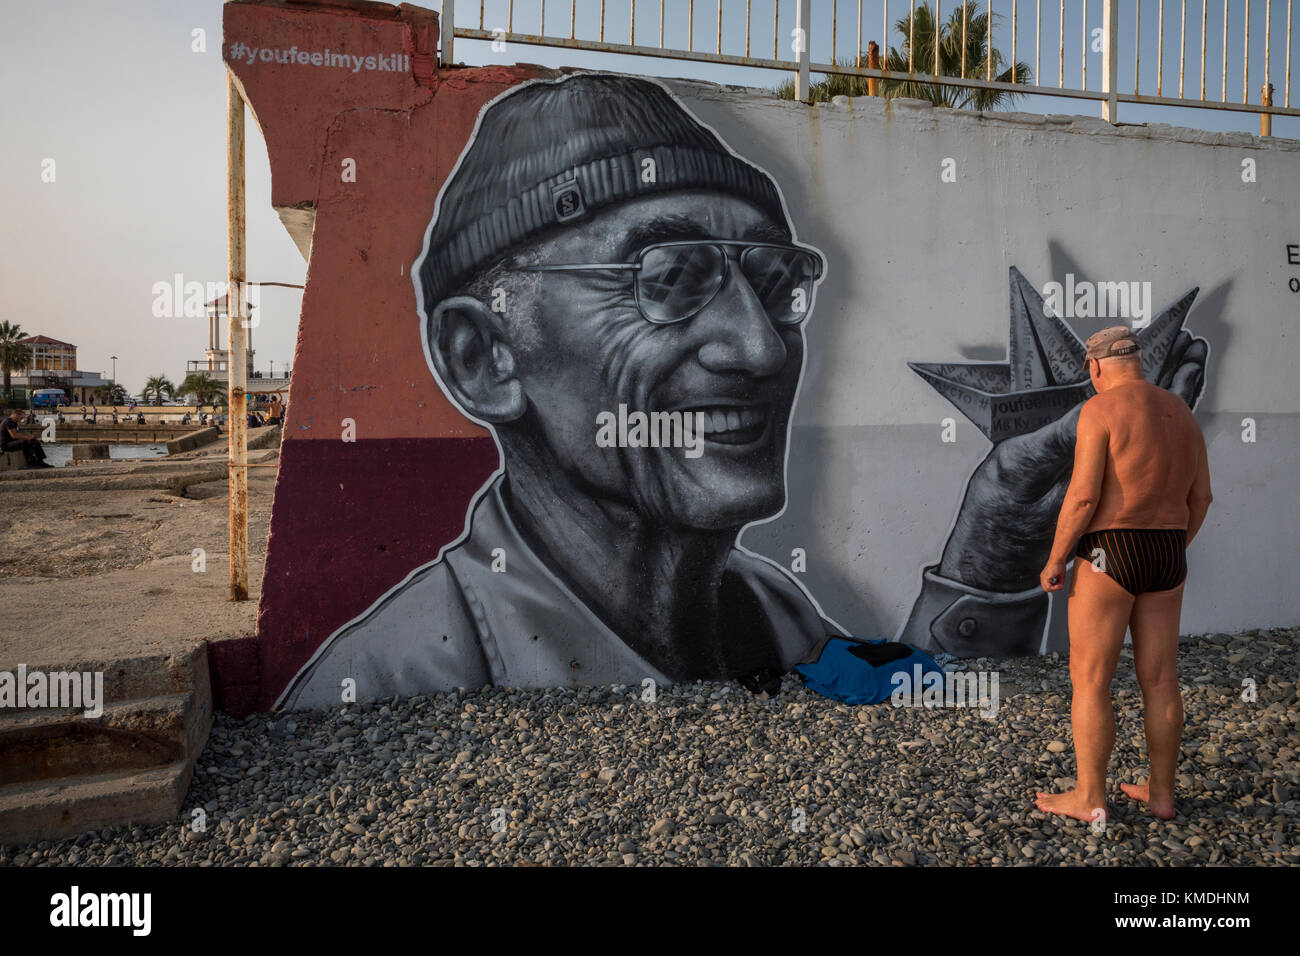 Portrait de l'explorateur français Jacques-yves cousteau sur central city beach "ayak' dans la ville de Sotchi, dans la région de Krasnodar, Russie Banque D'Images